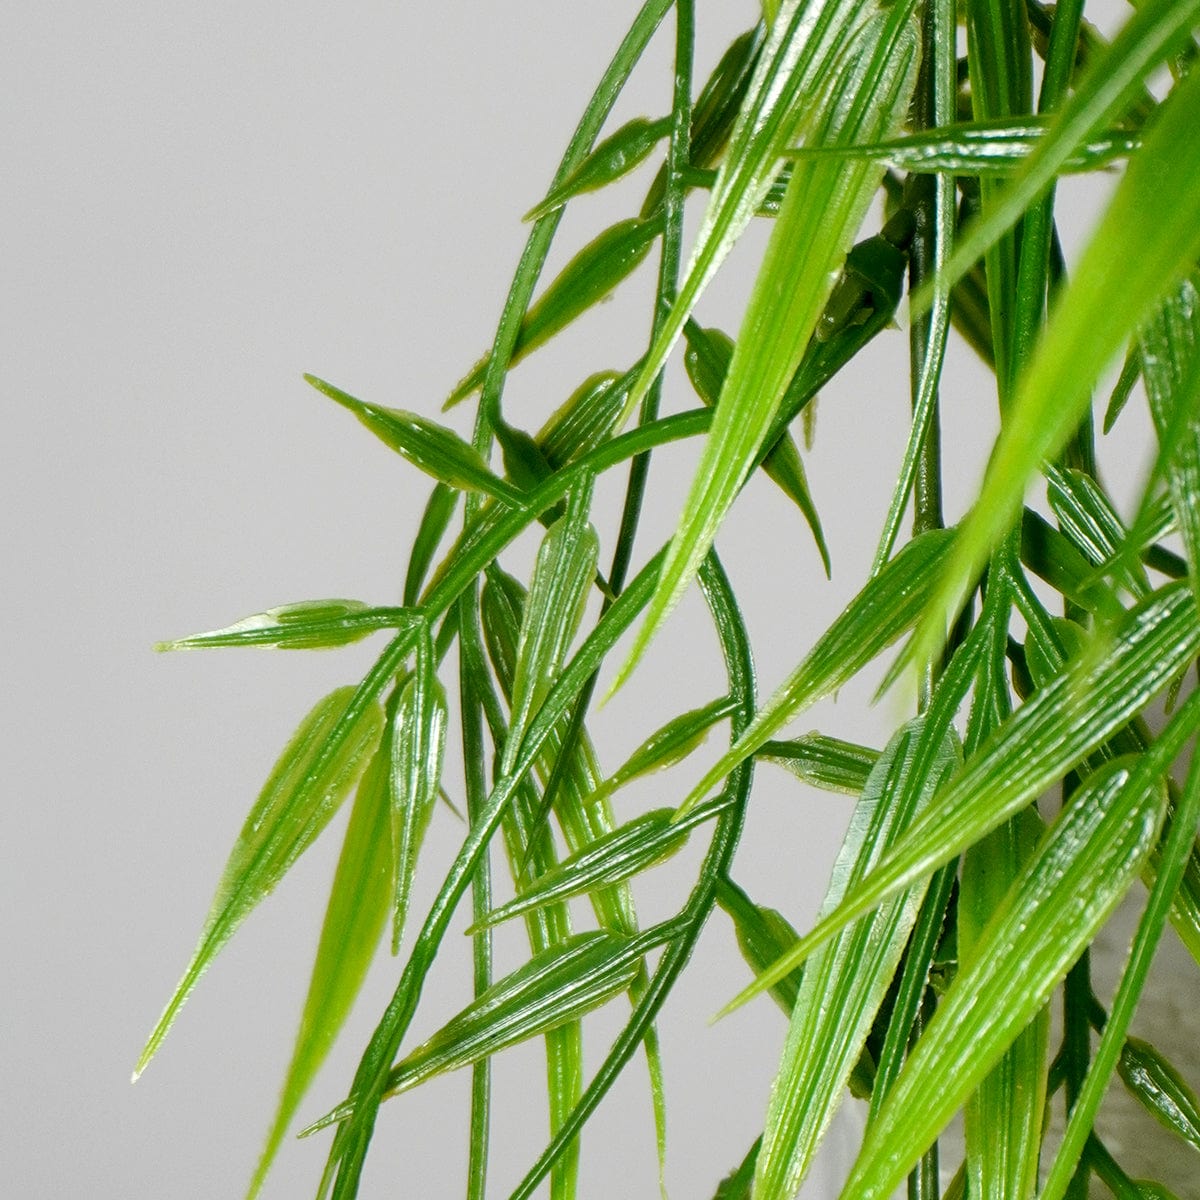 Hanging Bamboo